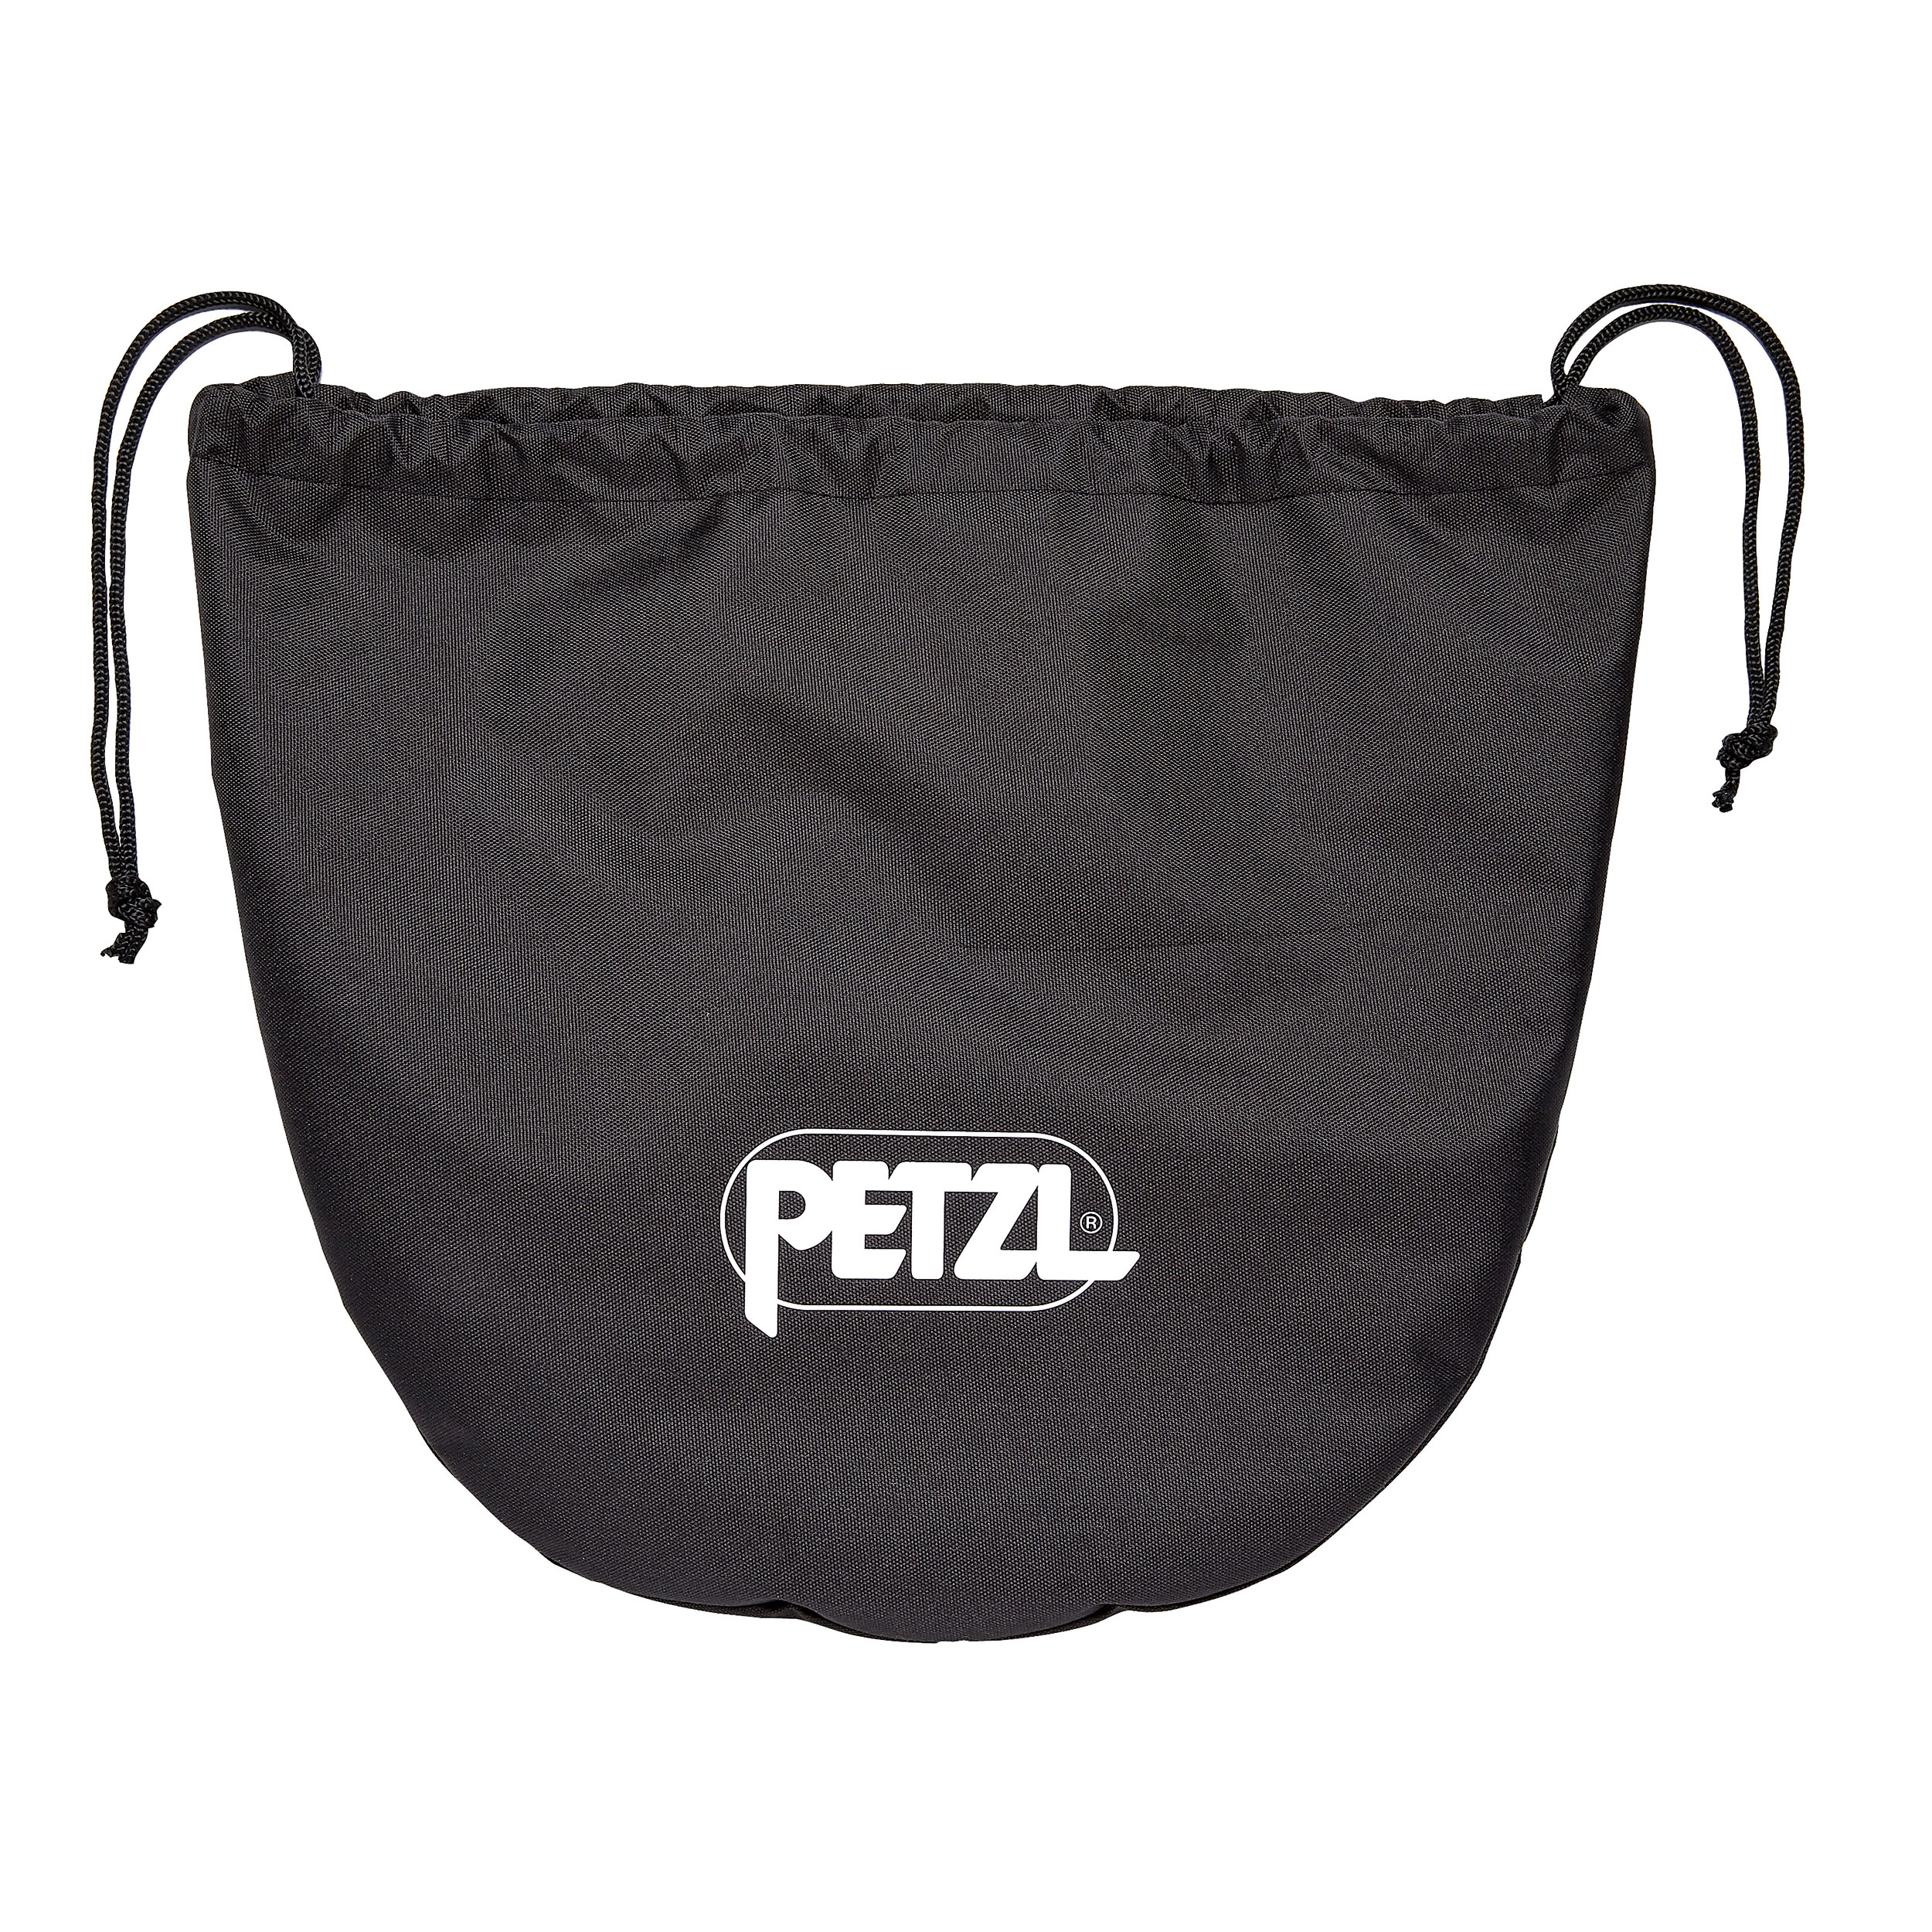 Tas voor helm Petzl A022